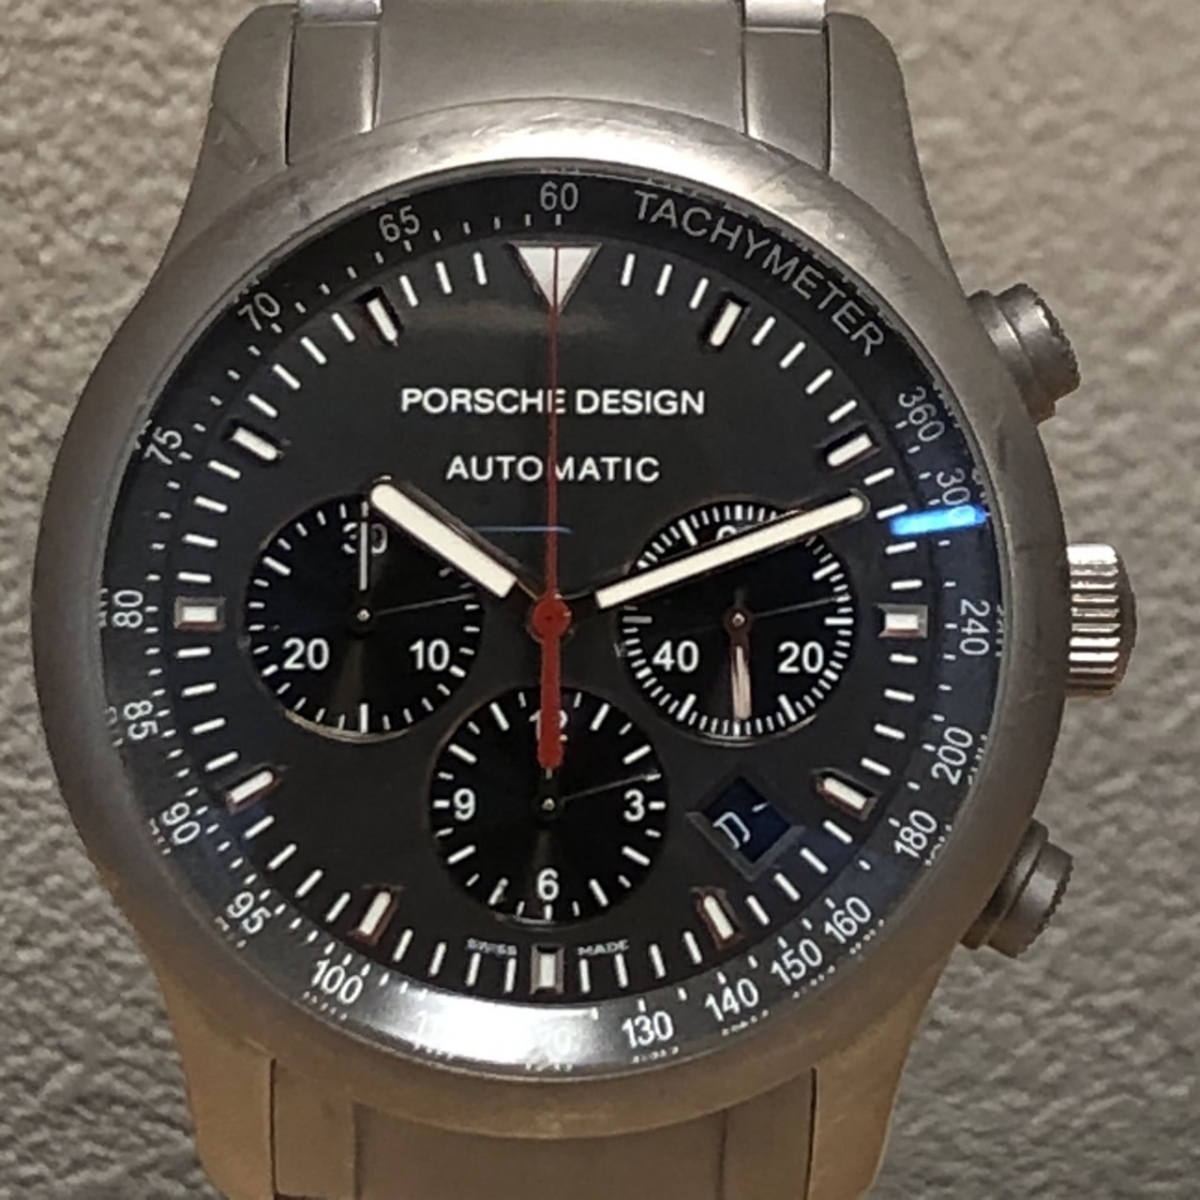 ポルシェデザインのP6612 Dashboard Automatic Chronograph ダッシュボード オートマティック クロノグラフ 腕時計の買取実績です。